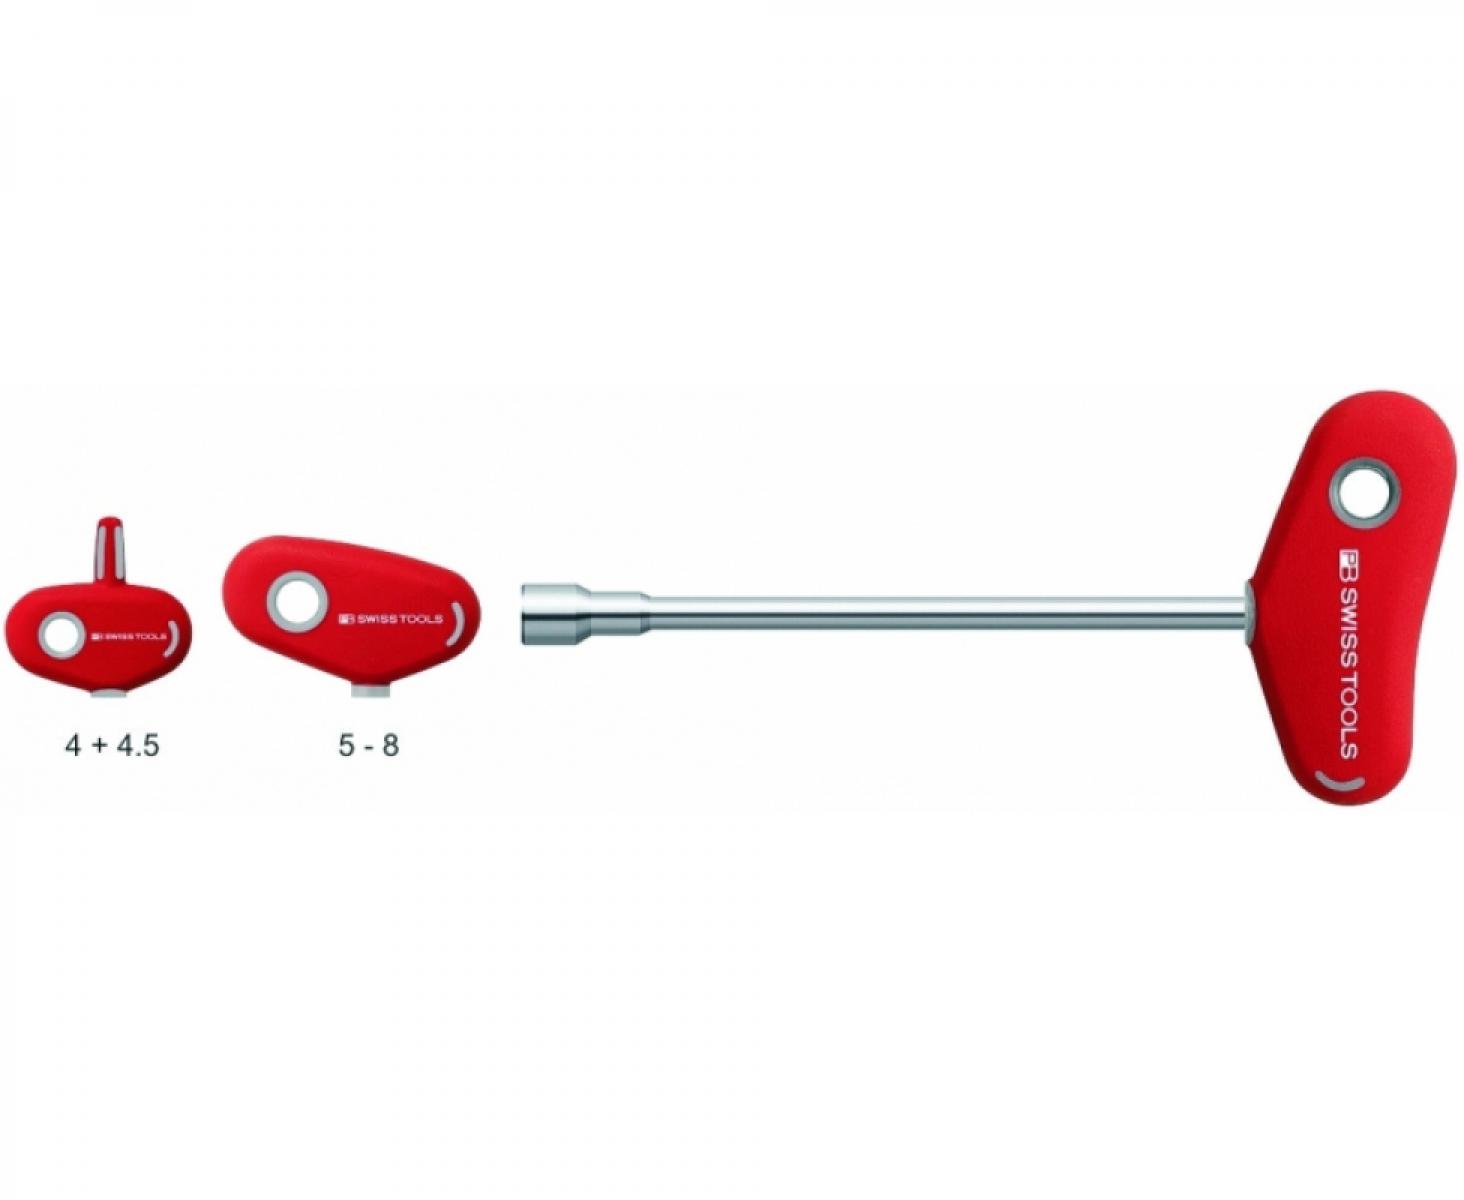 Отвертка-торцовый ключ HEX Nut с Т-образной ручкой PB Swiss Tools PB 202.11-230 M11